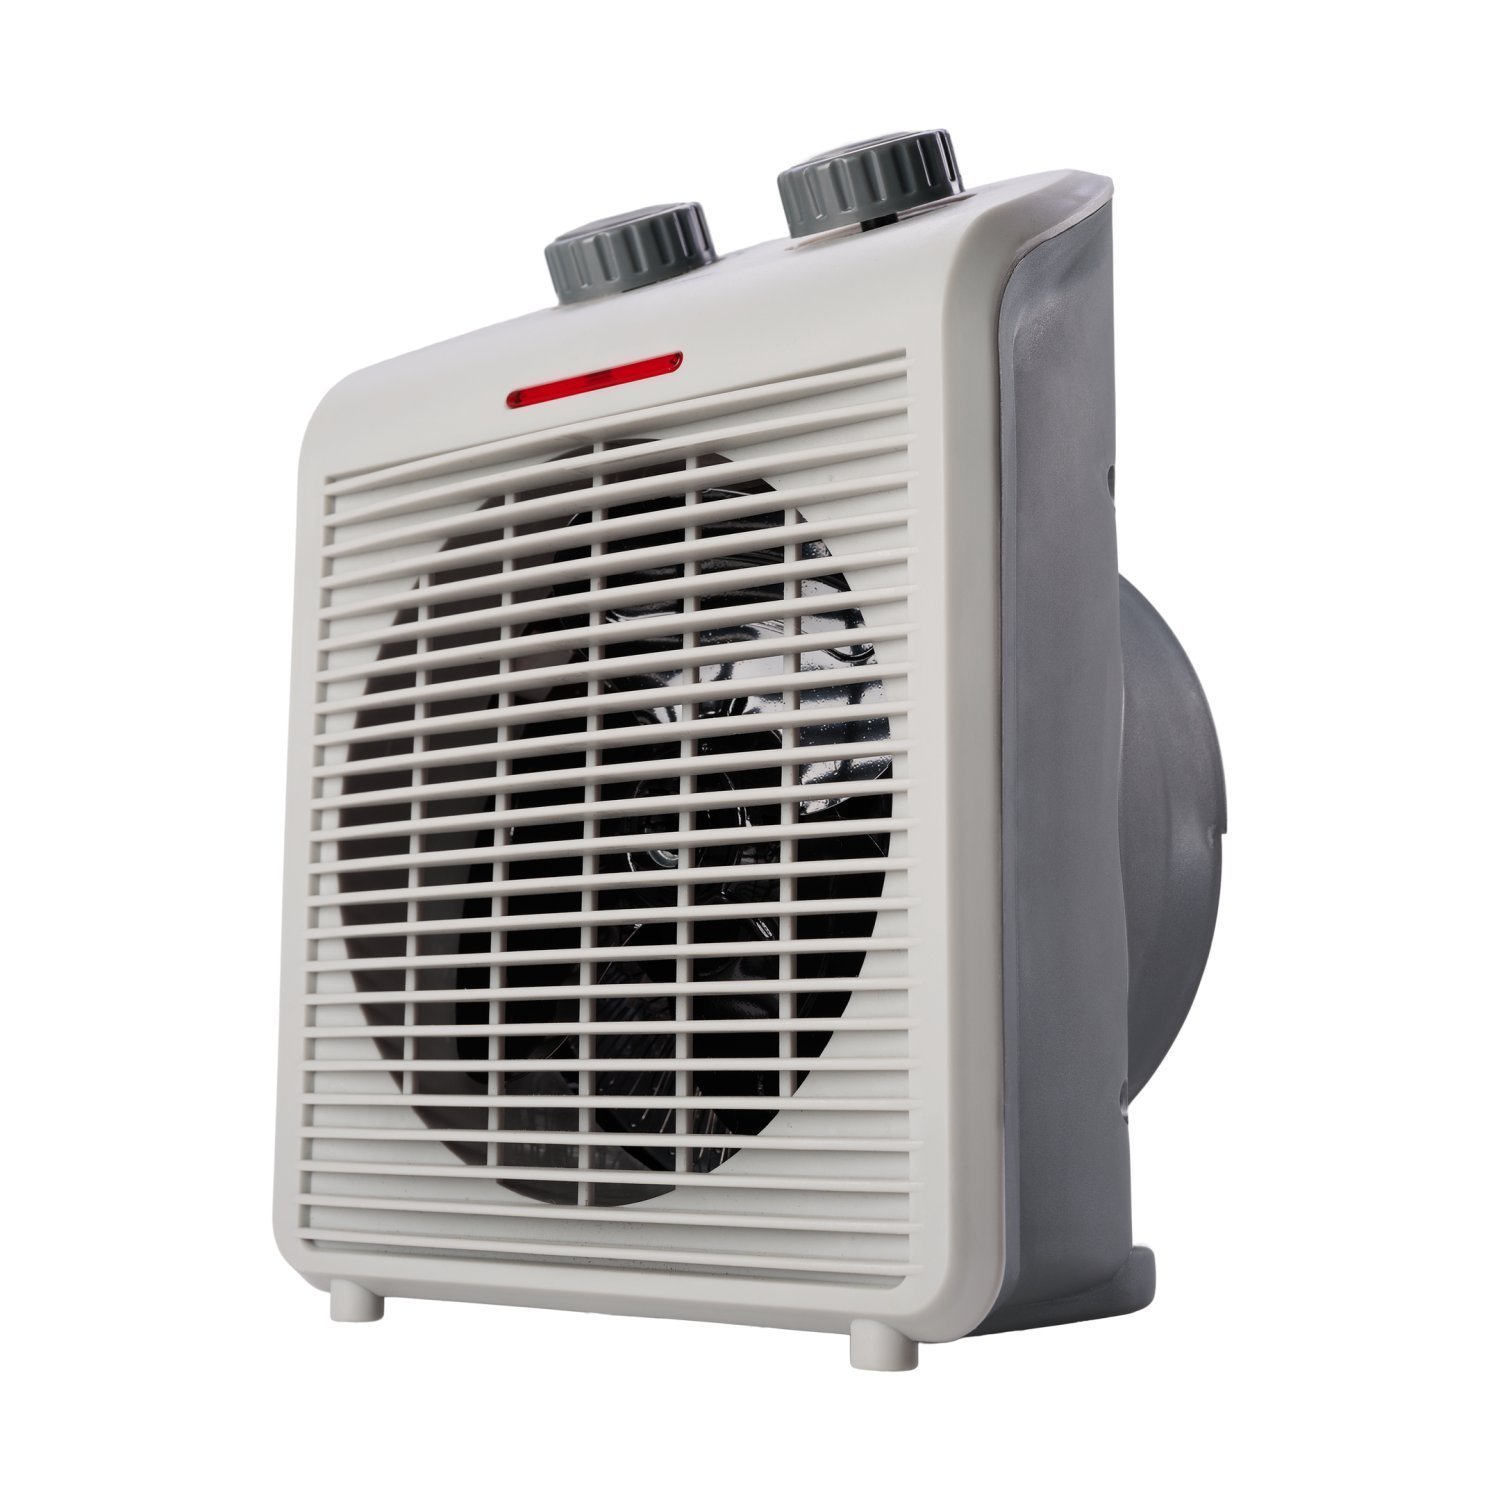 Aquecedor de Ar Portátil Air Heat 3 em 1 1500w 220v WAP Branco - 2